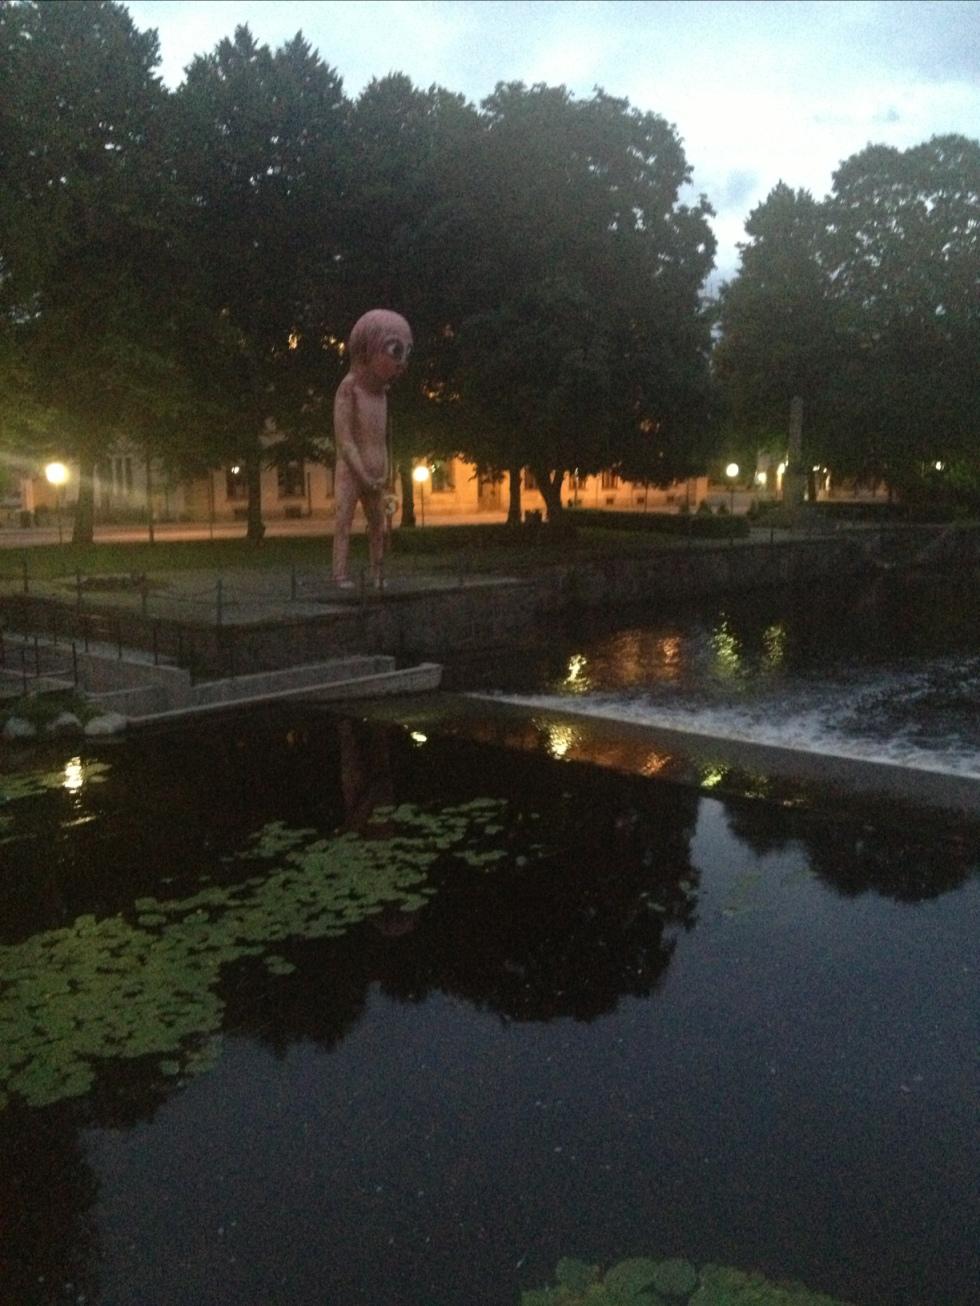 Staty i Örebro, vilket häftigt monument!